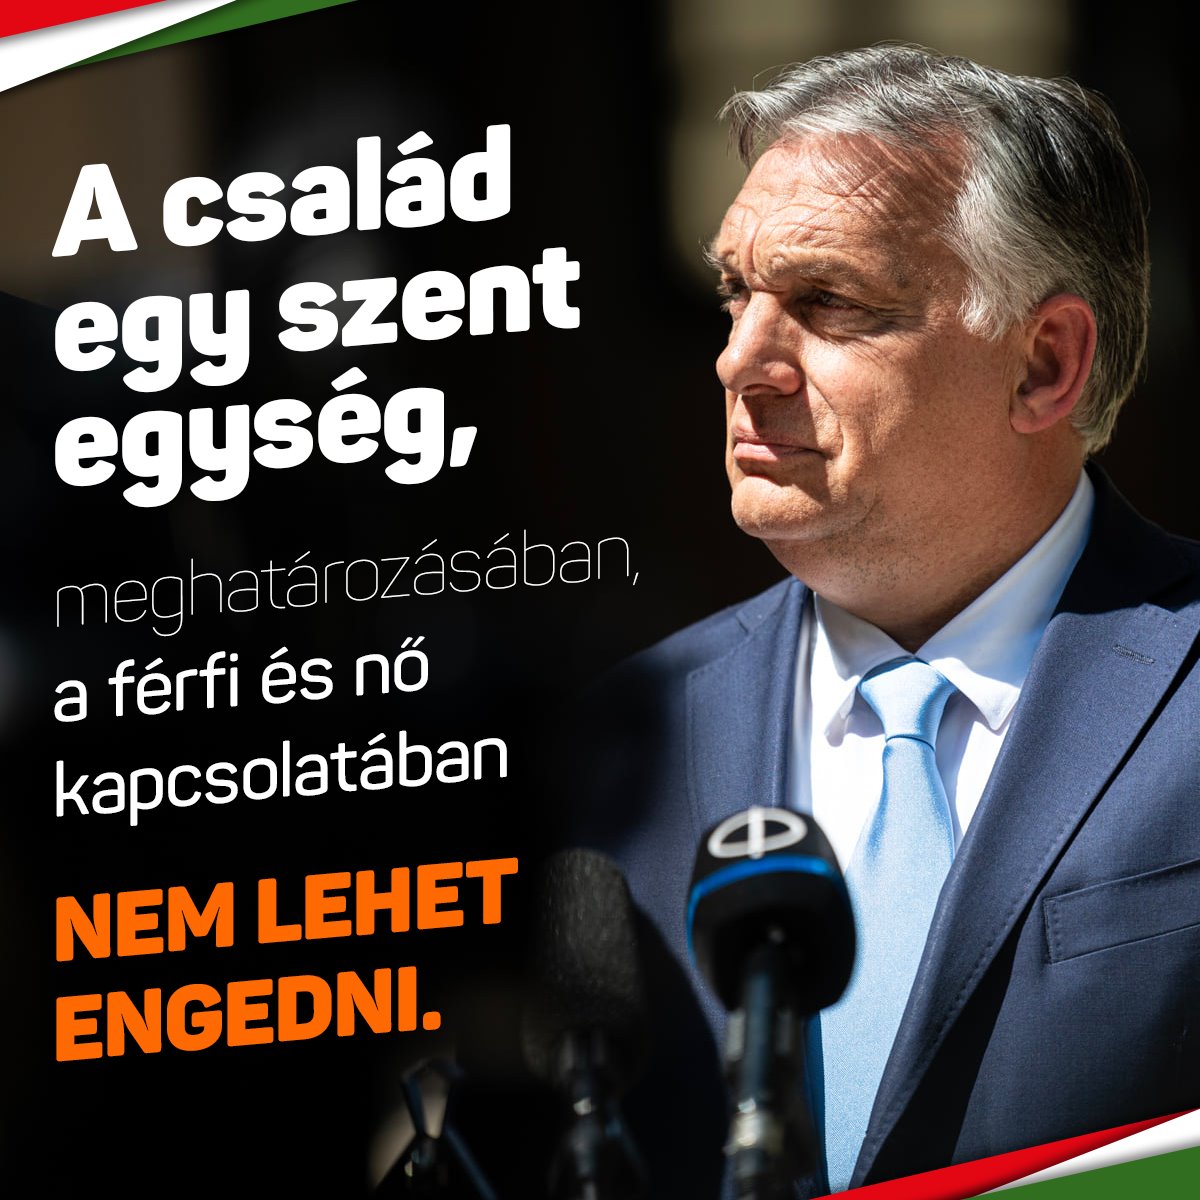 Orbán Viktor – A család egy szent egység, meghatározásában, a férfi és nő kapcsolatában nem lehet engedni.